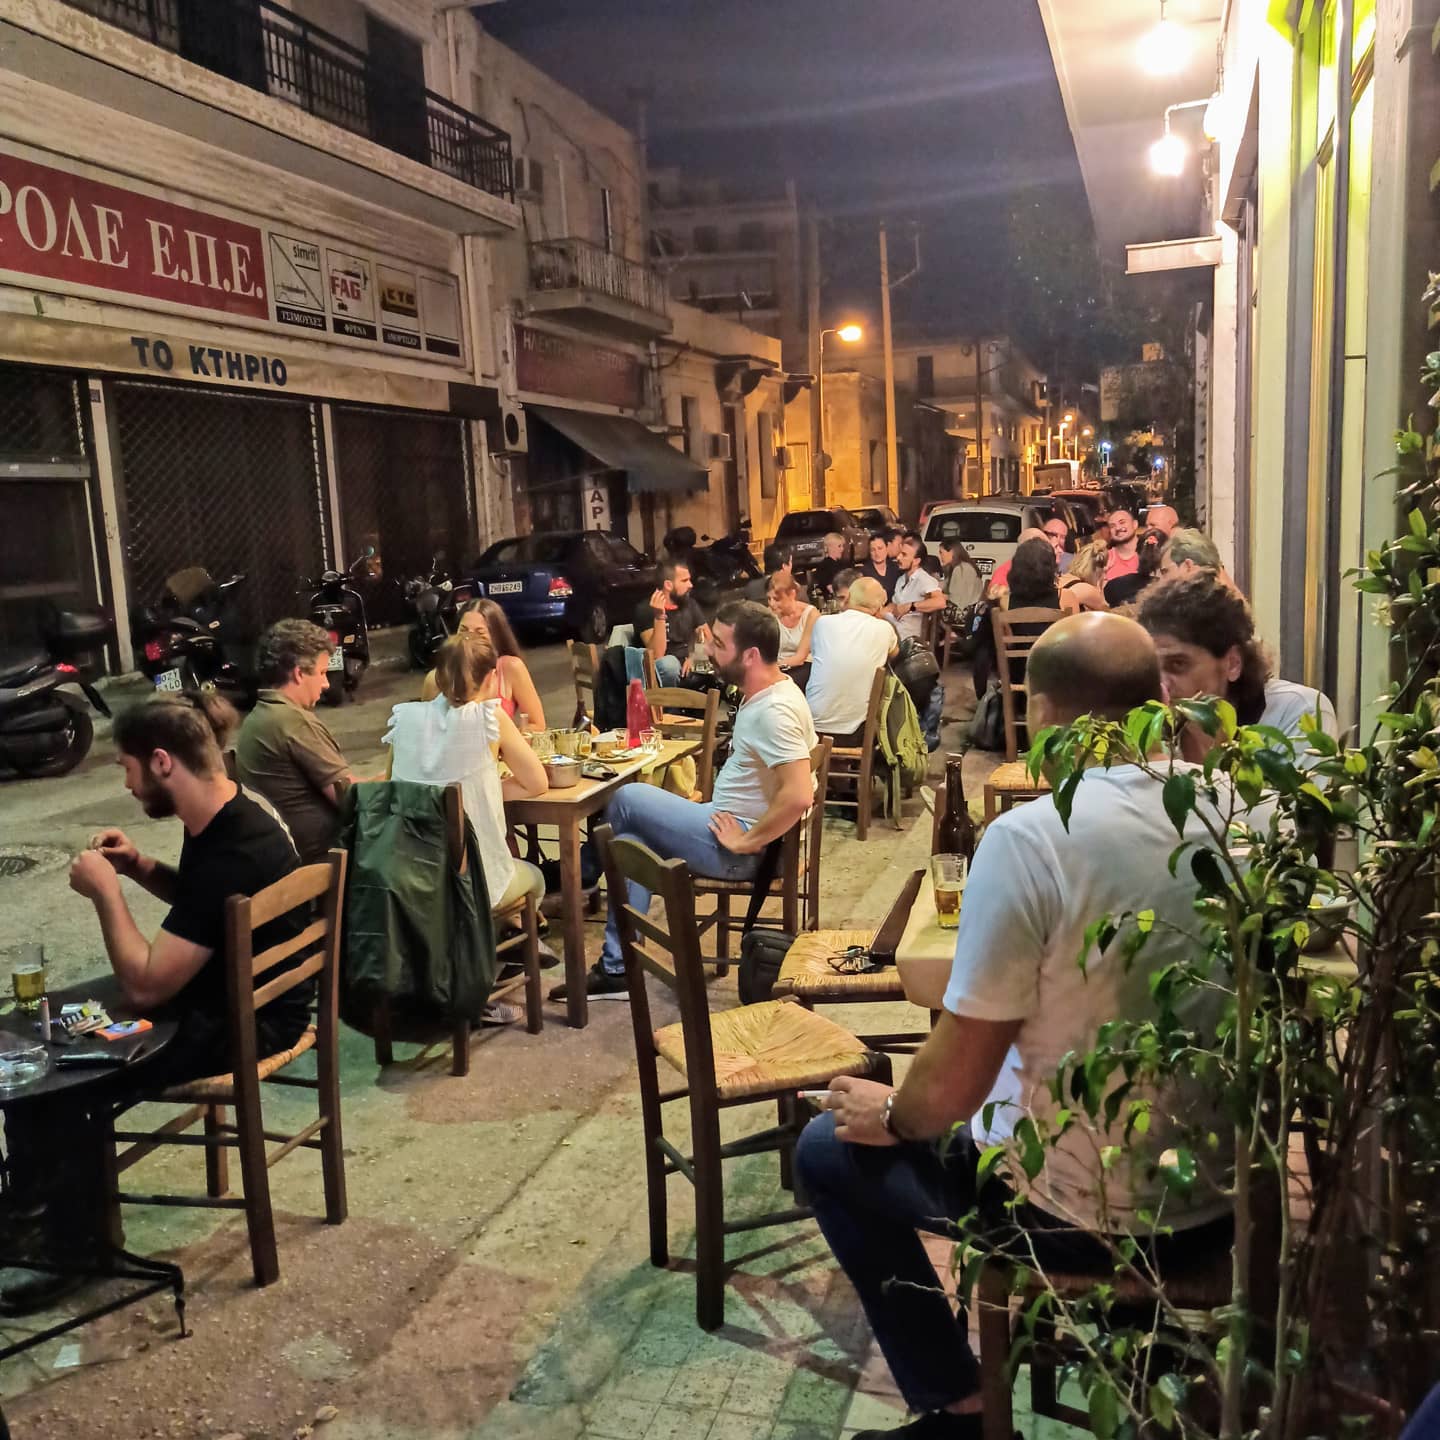 Γεμίζει από νεολαία: Το παρεΐστικο μαγαζί που έρχονται απ' όλη την Ελλάδα για να δοκιμάσουν τα κεφτεδάκια του (Pics)